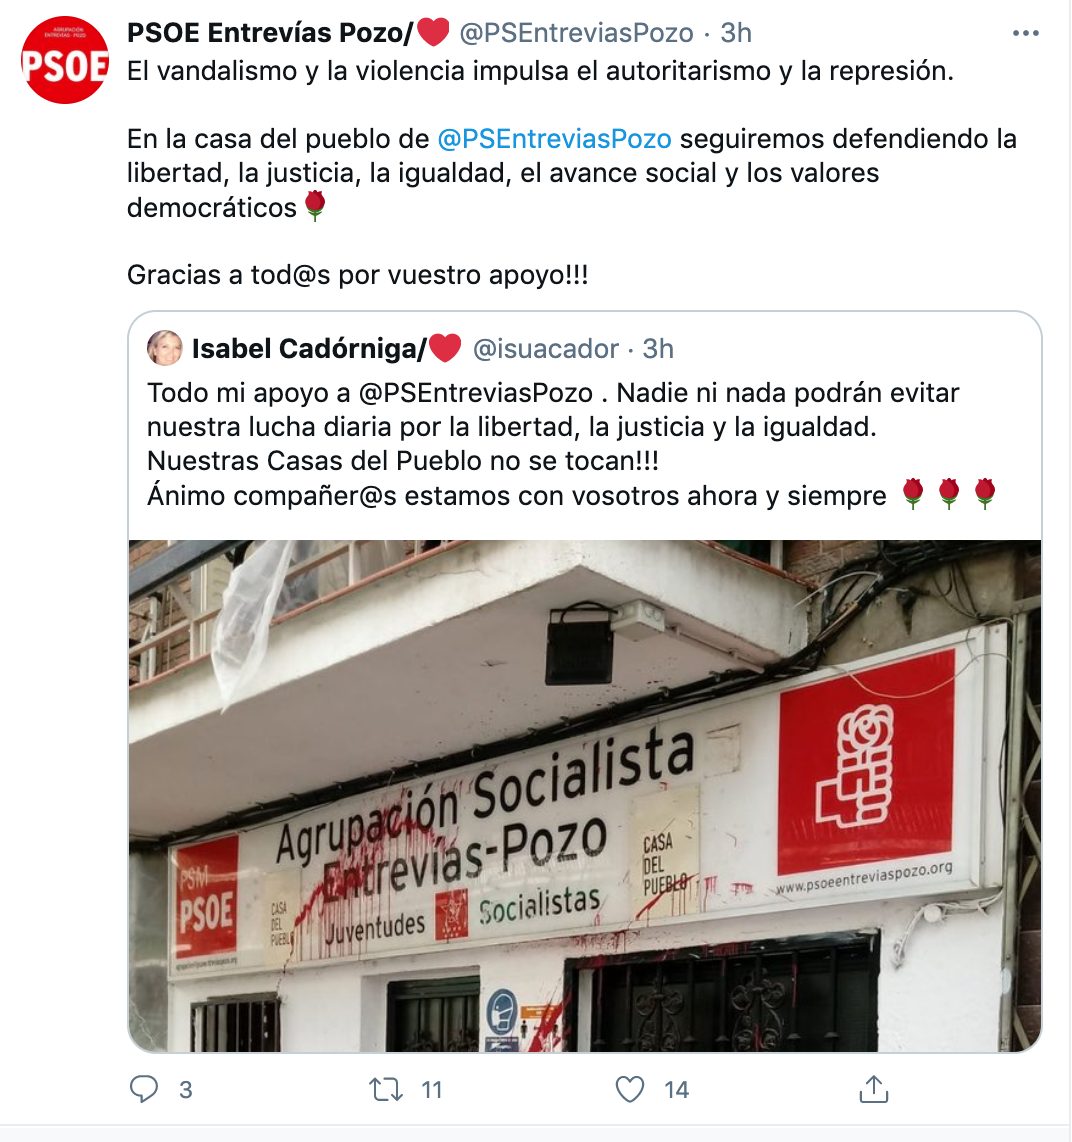 Tuit del PSOE de Entrevias Pozo. Twitter